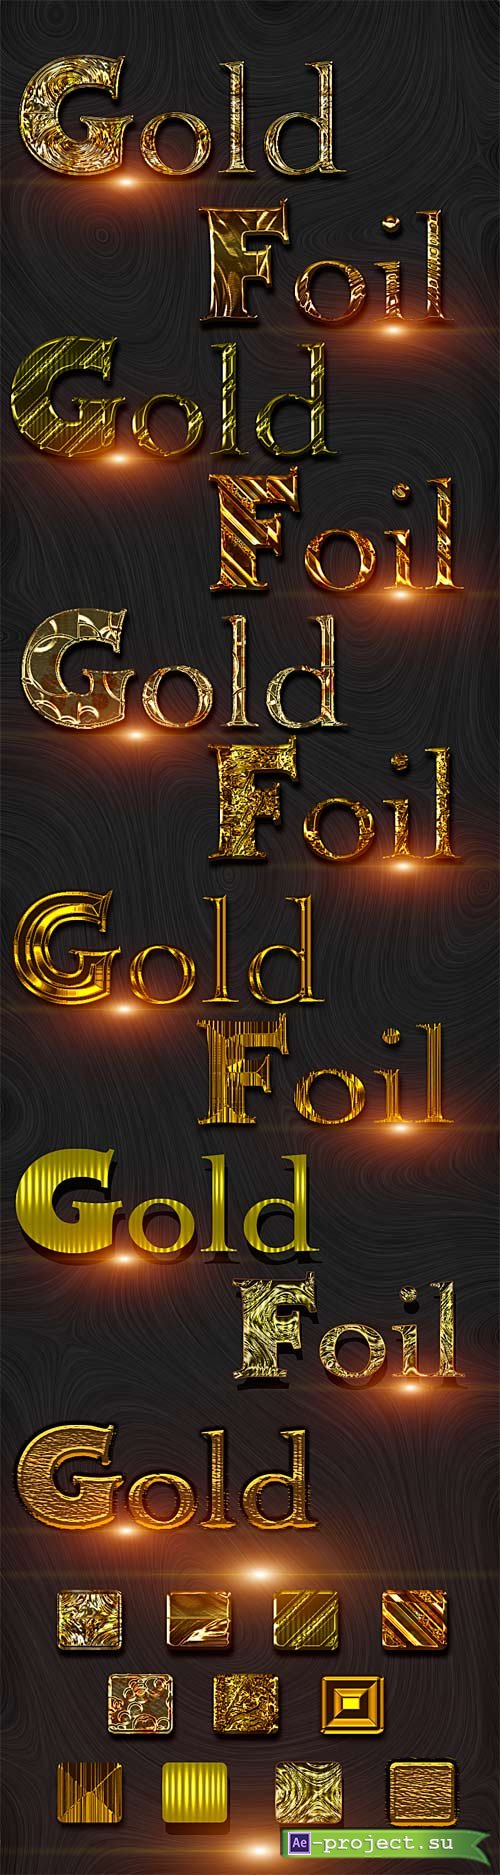 Golden Foil styles